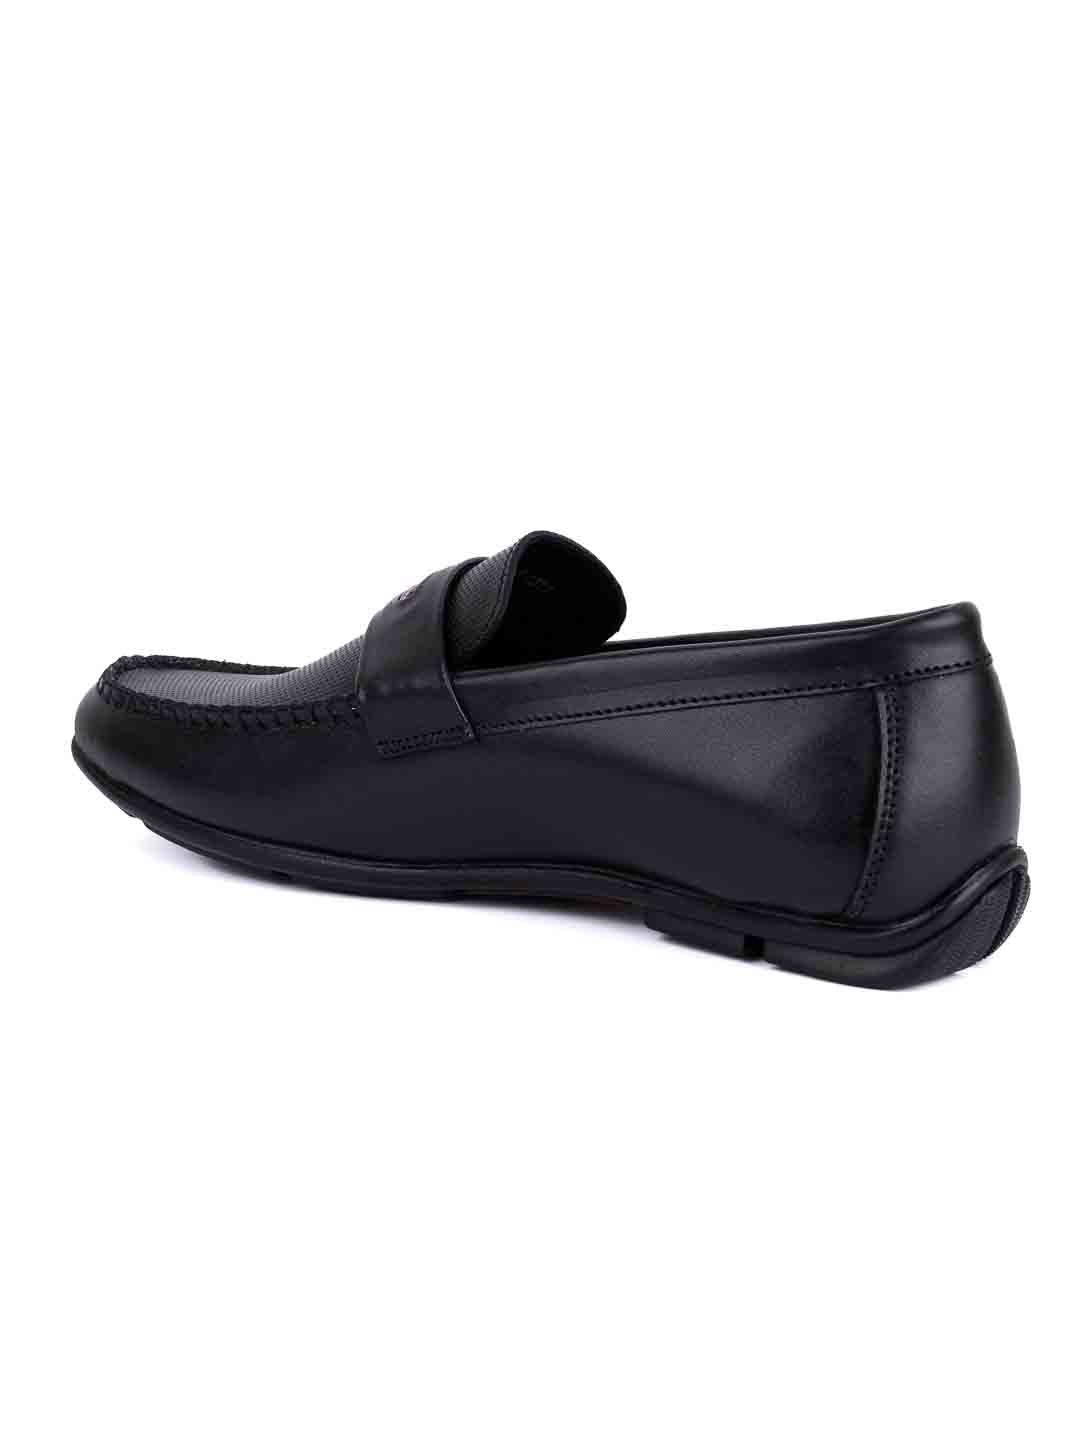 Footwear, Men Footwear, Black Driving Shoes